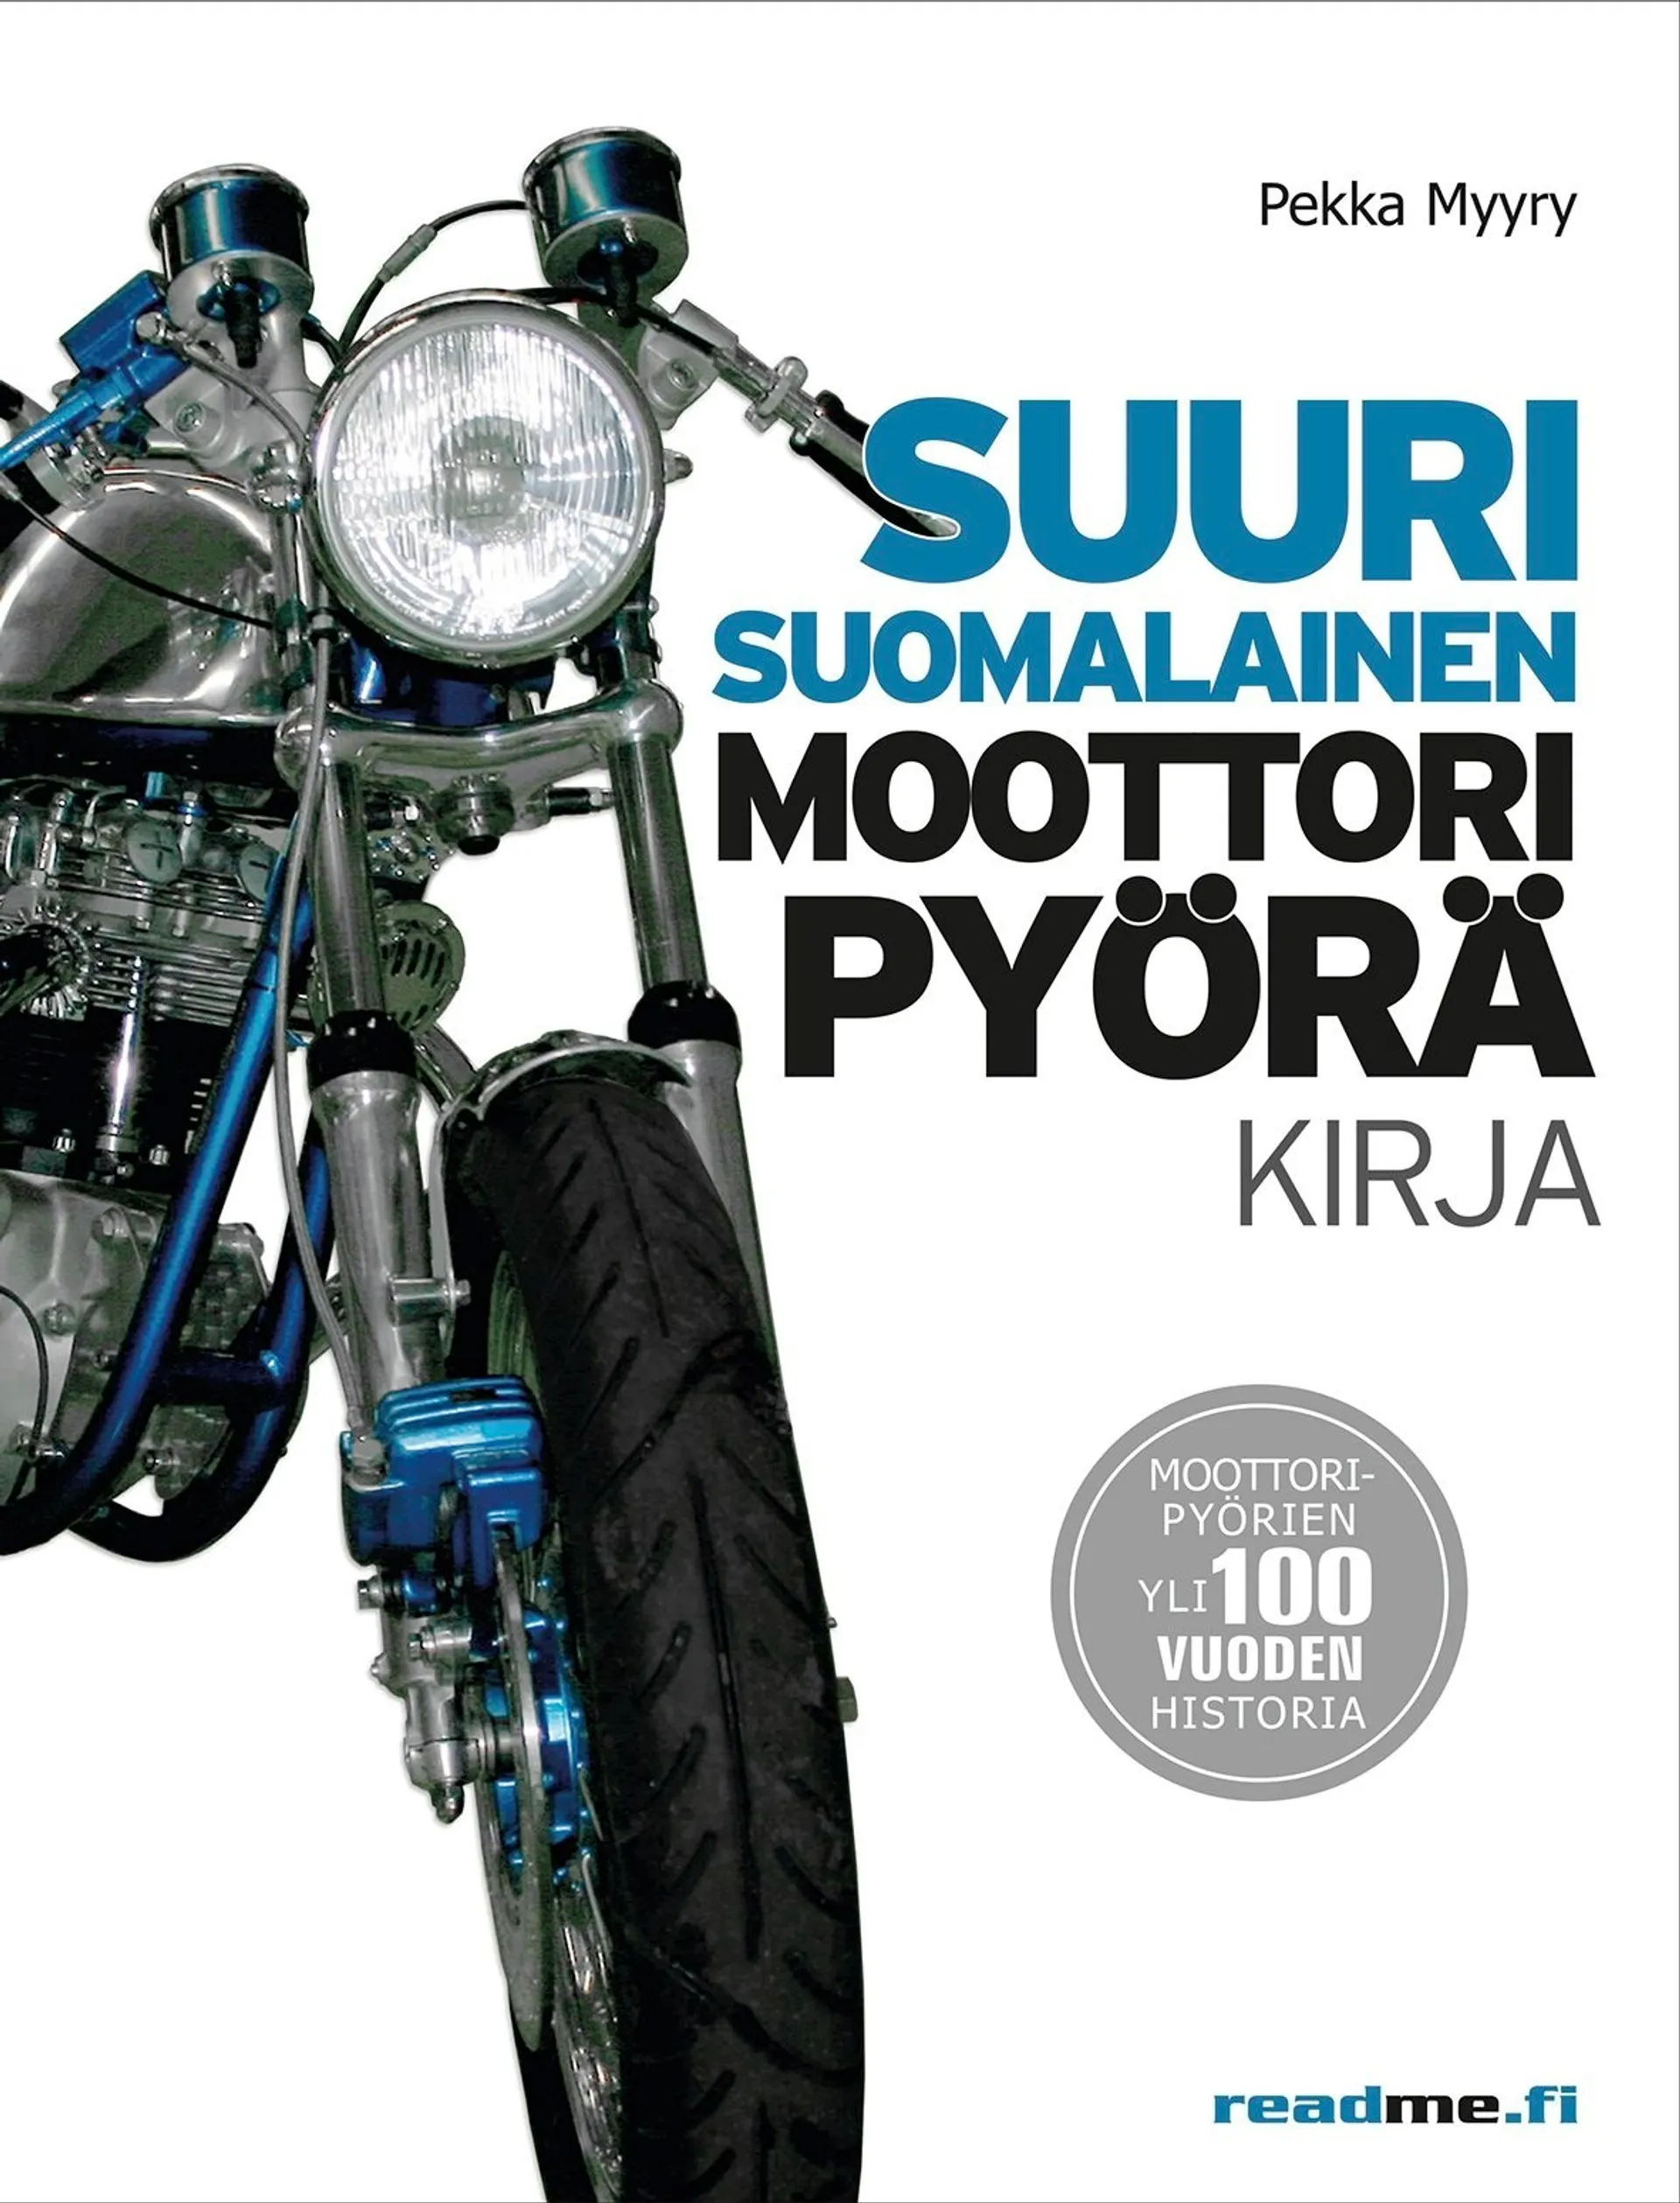 Myyry, Suuri suomalainen moottoripyöräkirja